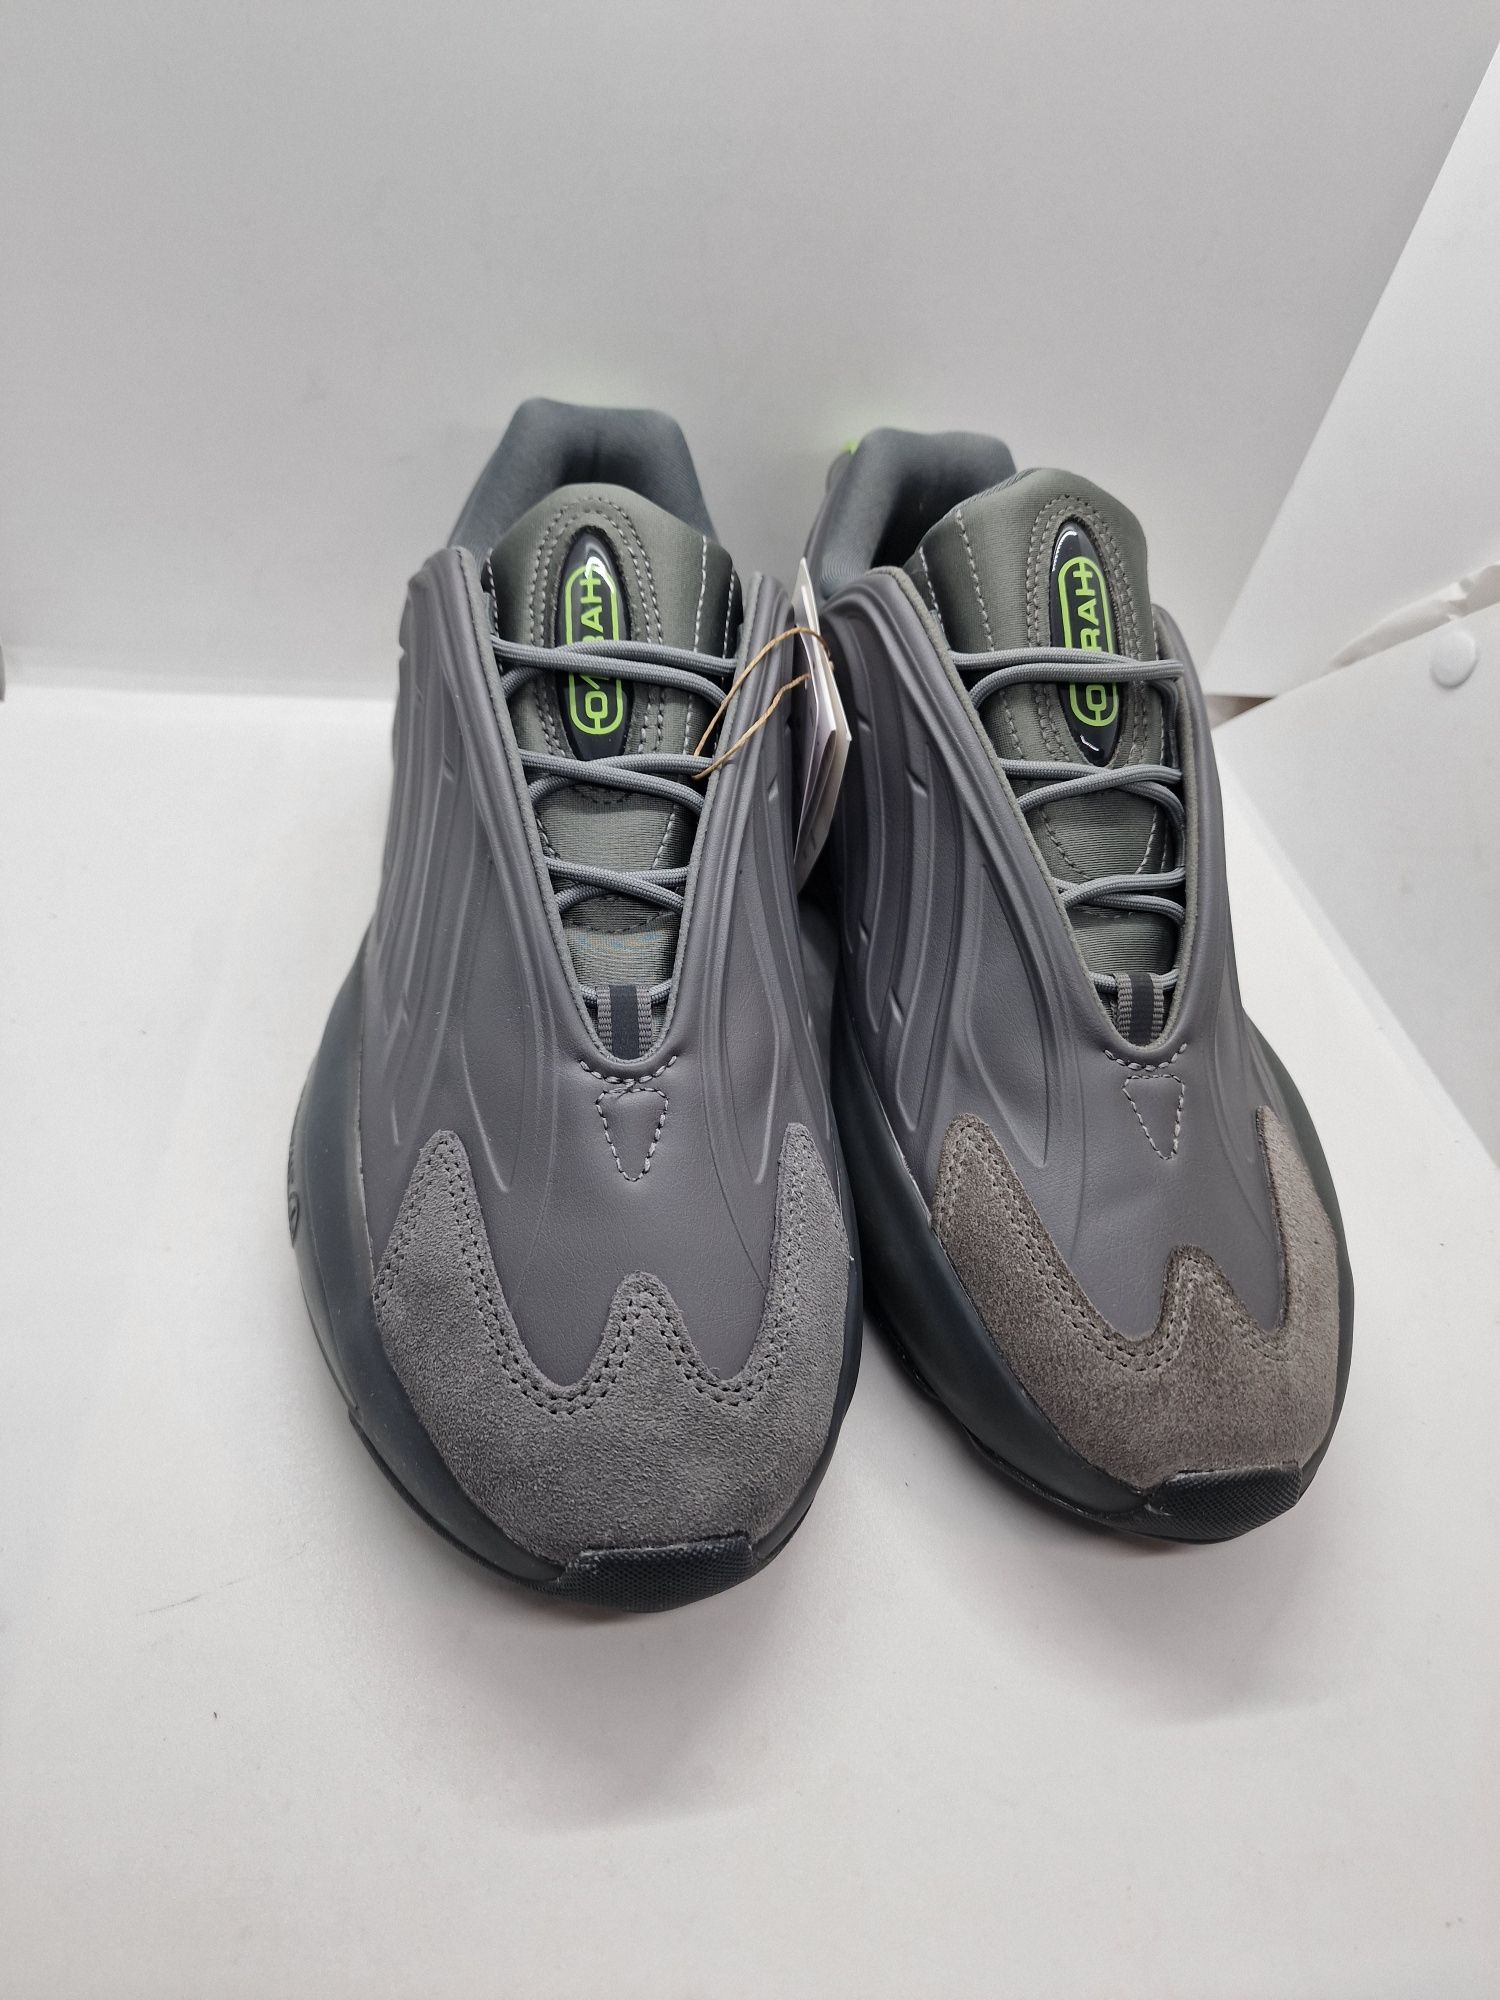 Adidas Ozrah GX3239 nr. 40,40 2/3,41 1/3,42